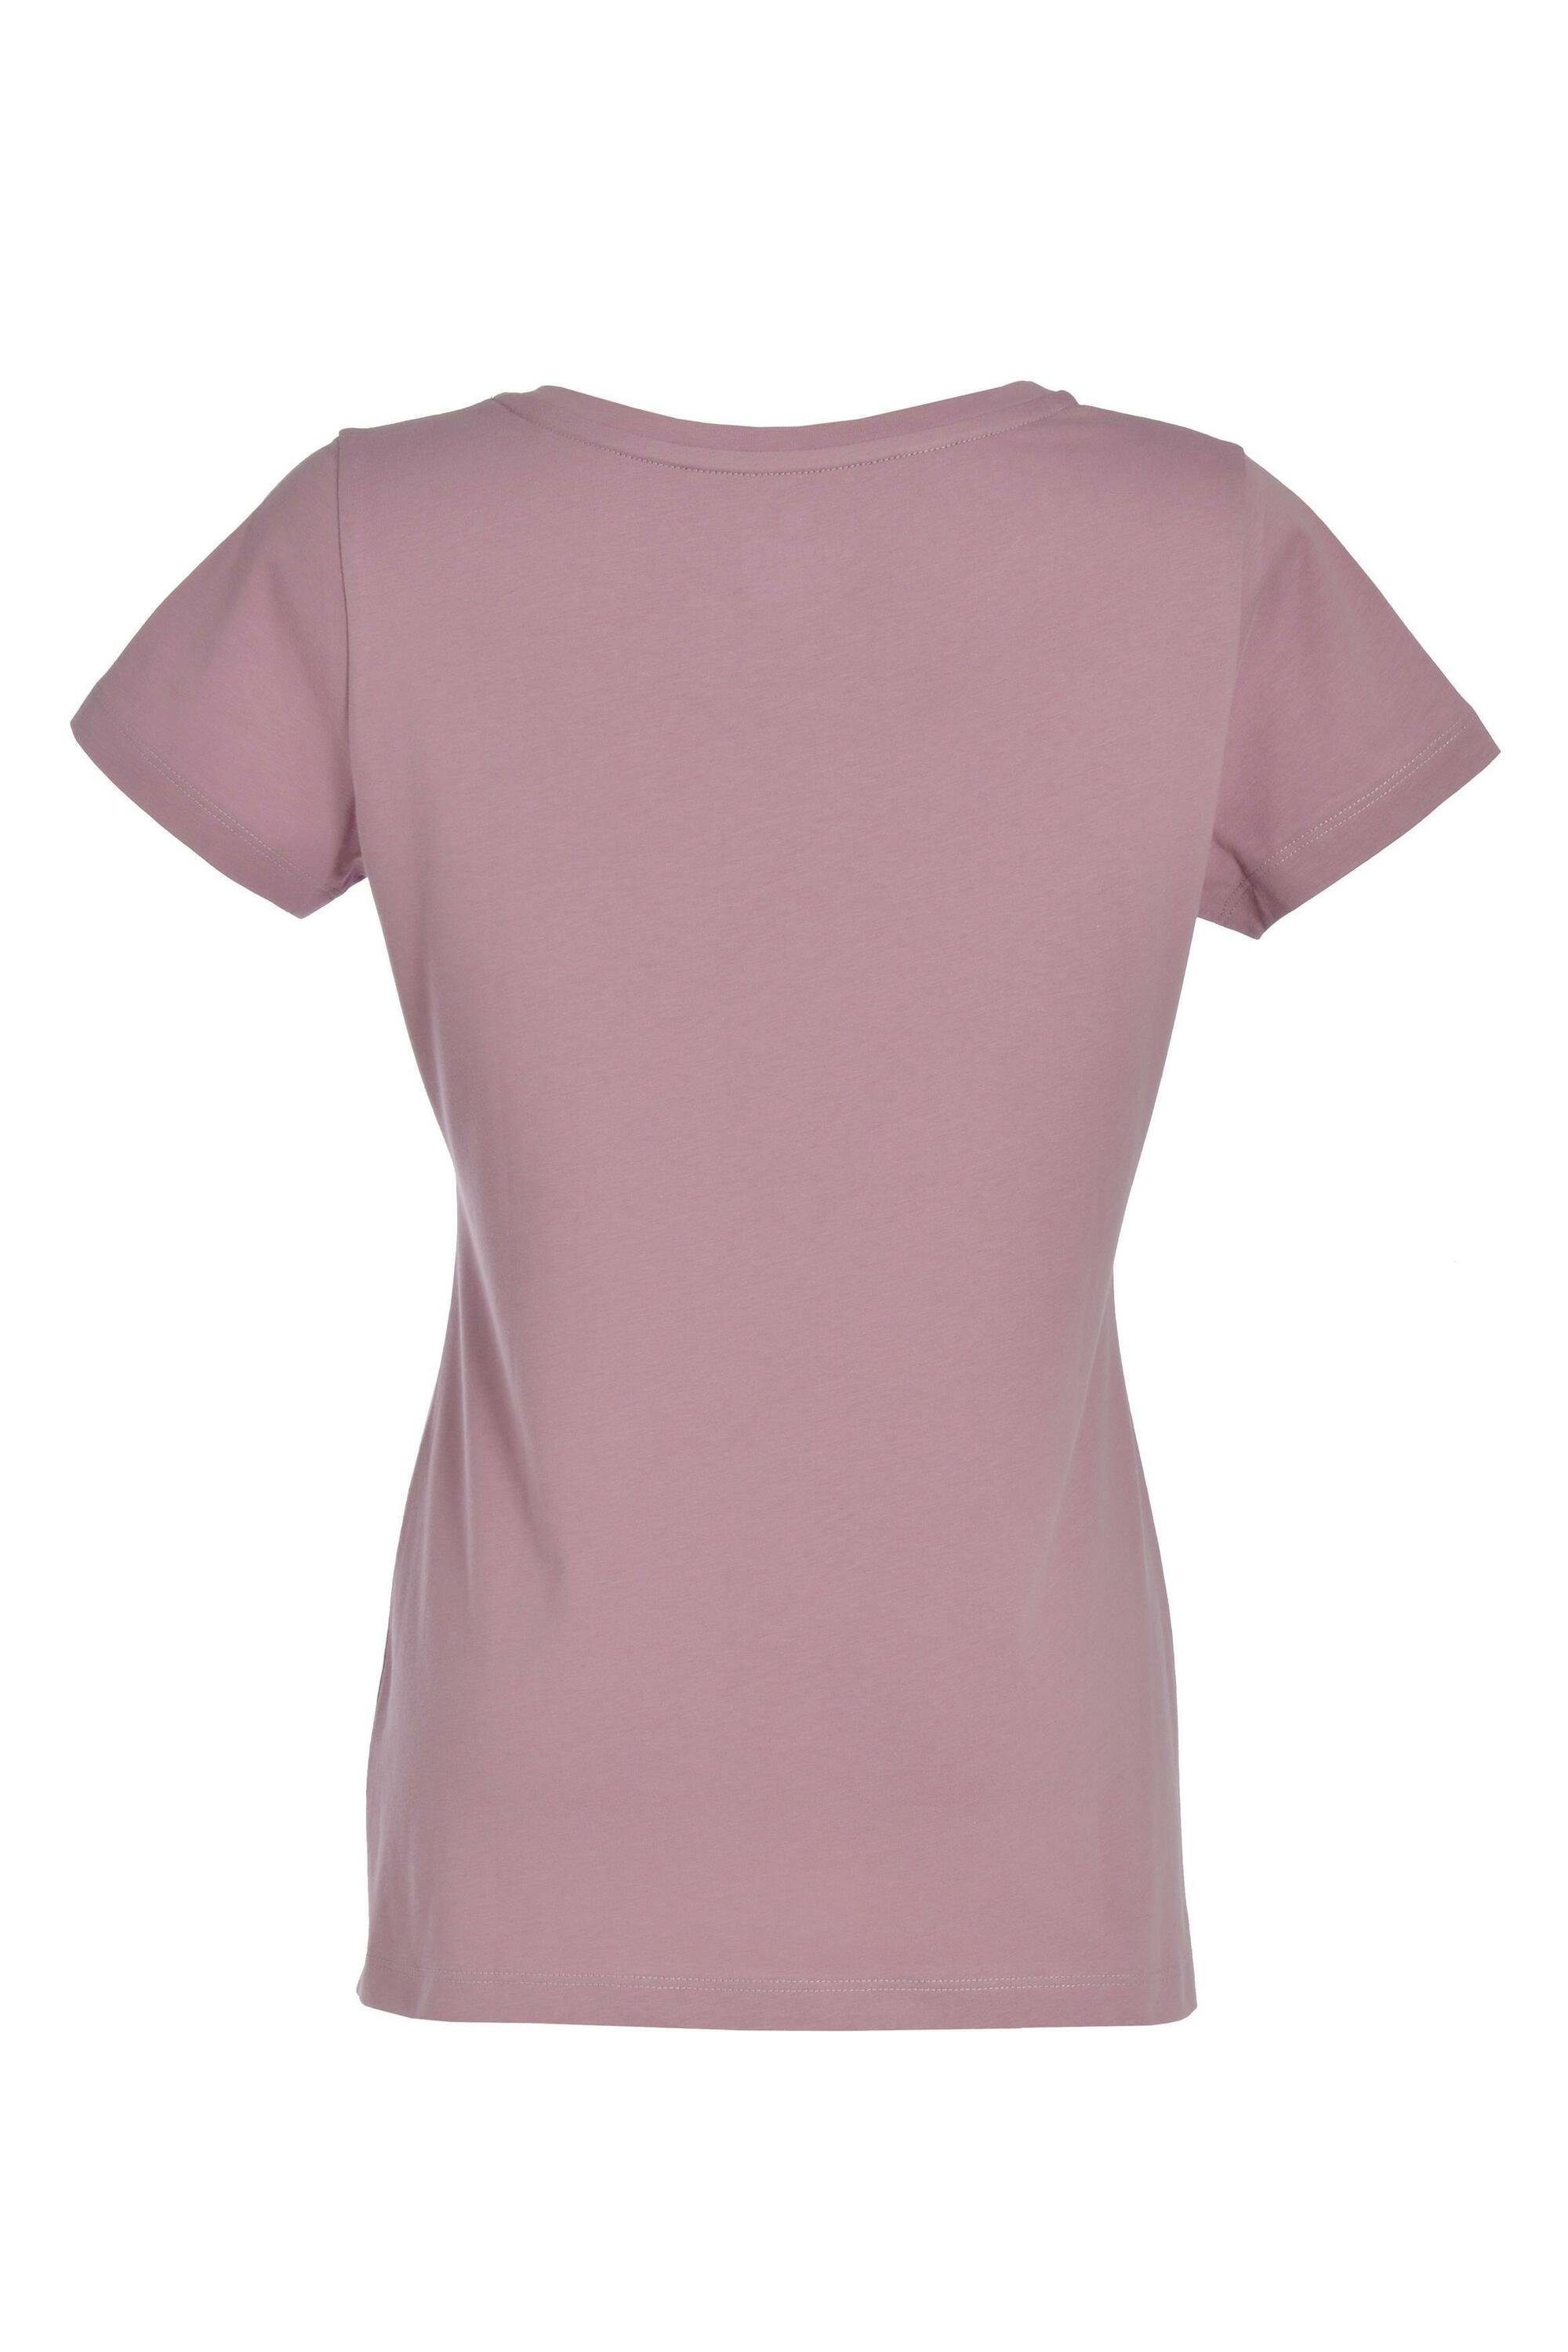 Bio-Baumwolle für Damen, aus Irene Gipfelglück Lilac T-Shirt